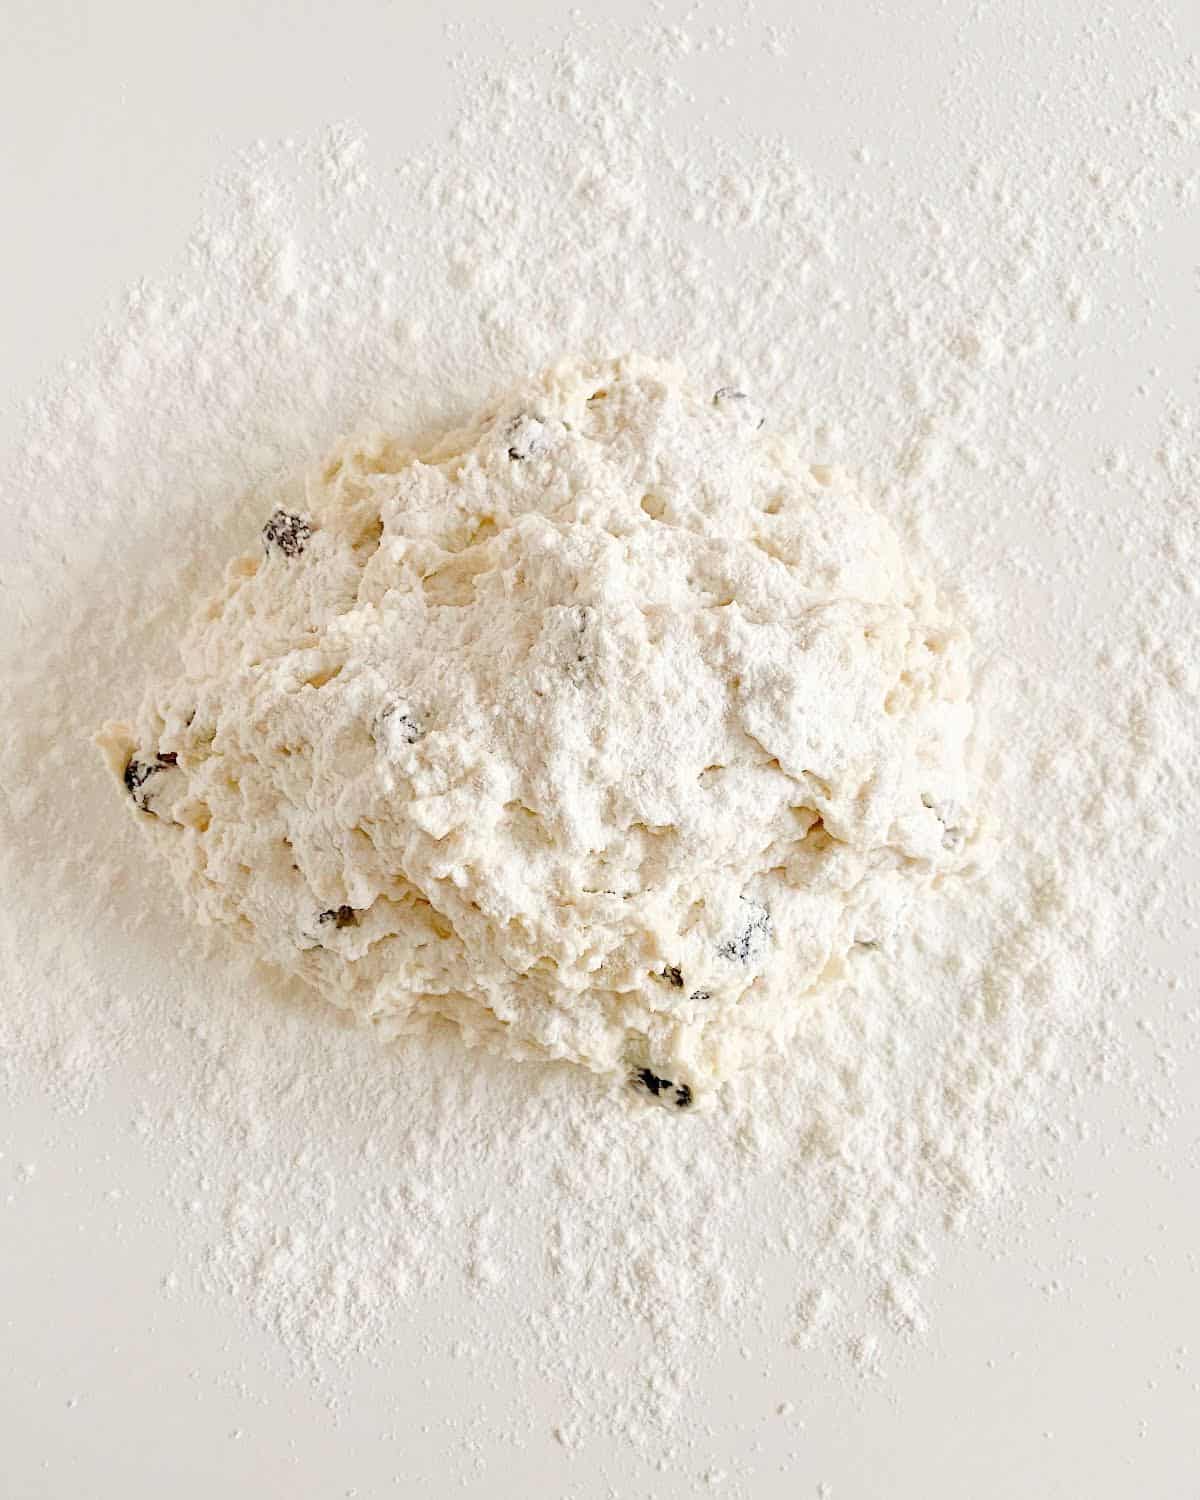 Shaggy mass of raisin soda bread with flour on top on a floured white surface.